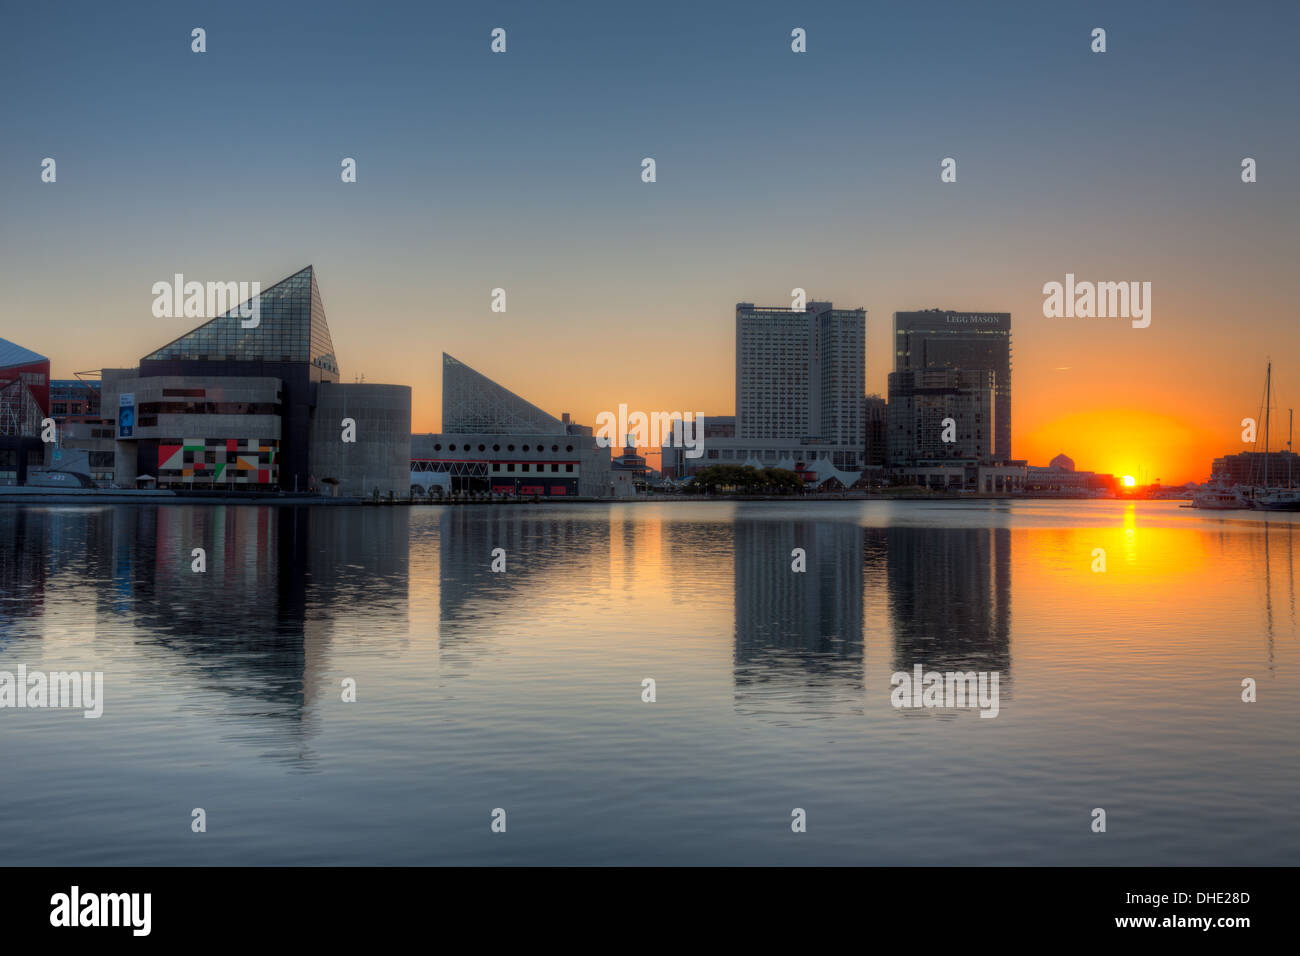 Le rising sun apporte un nouveau jour pour les eaux de la rivière Patapsco et le port intérieur de Baltimore, Maryland. Banque D'Images